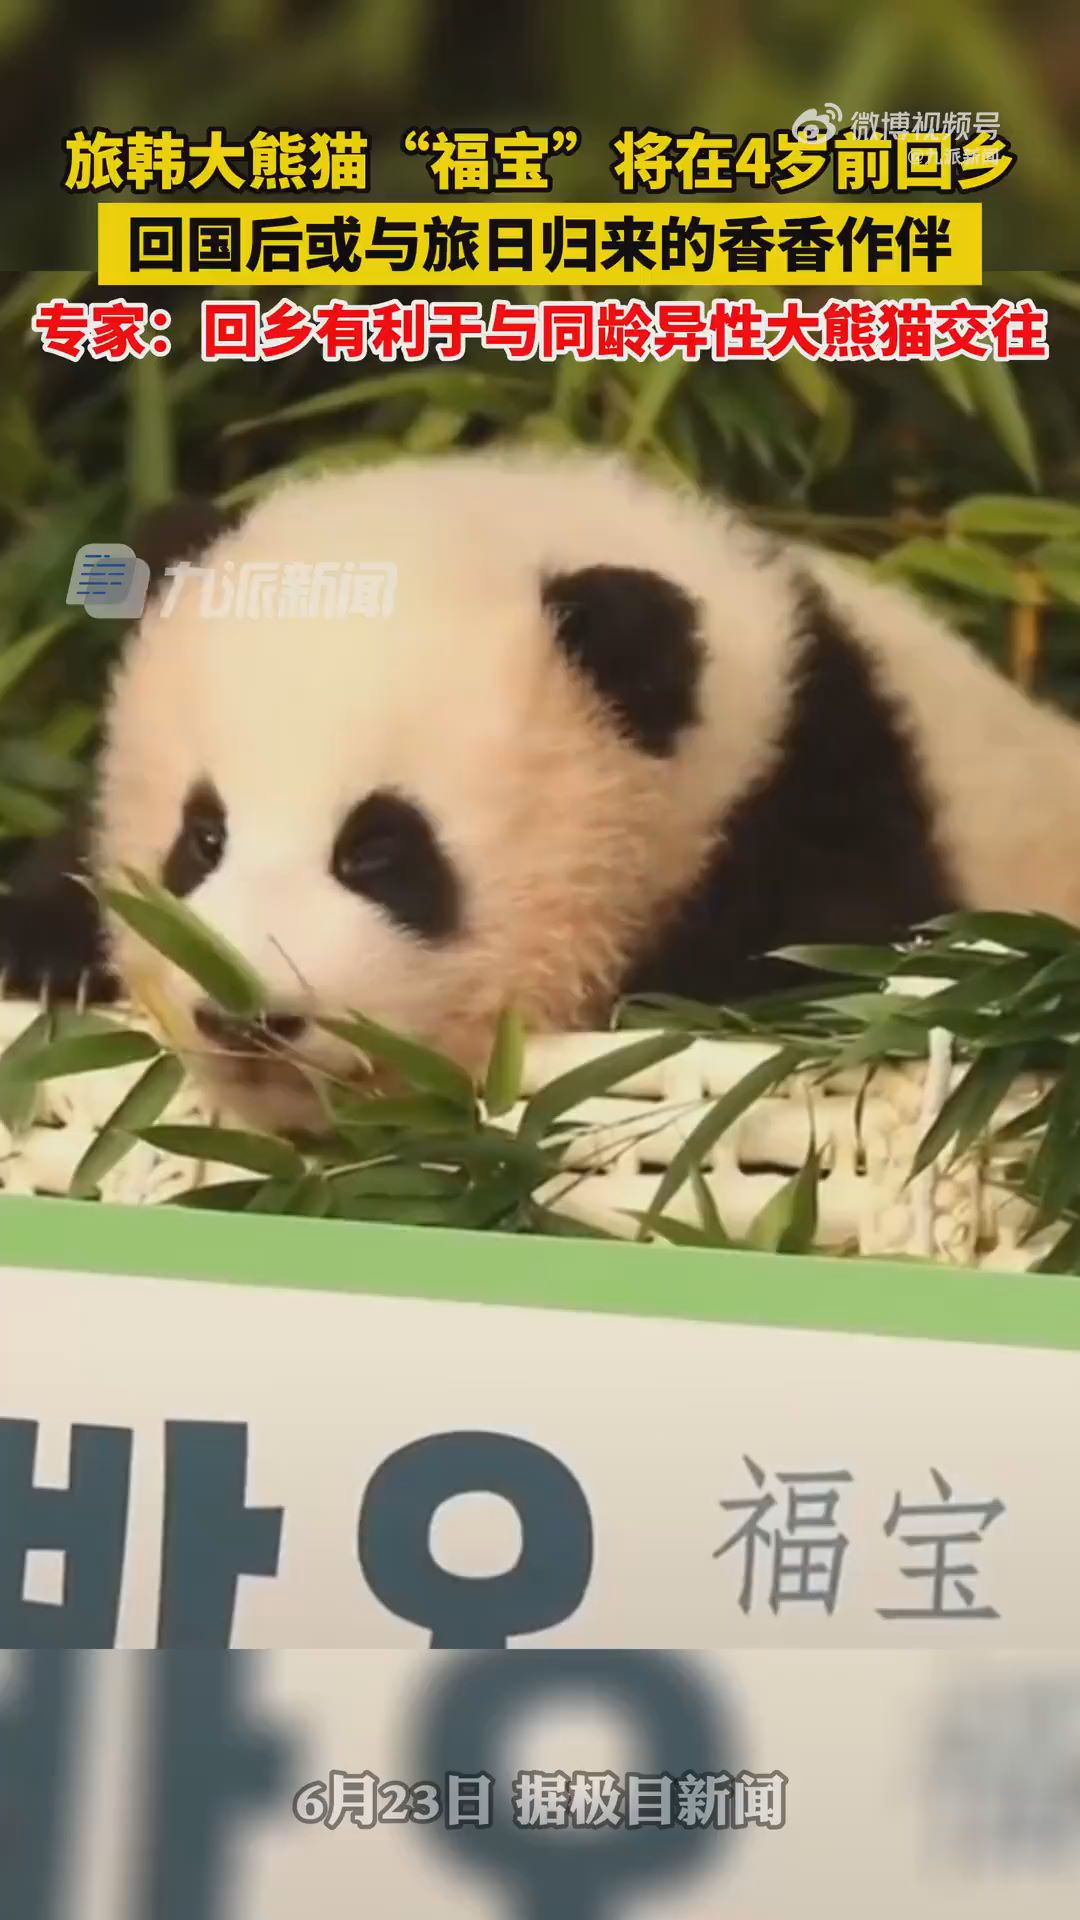 旅韓大熊貓福寶將返回中國